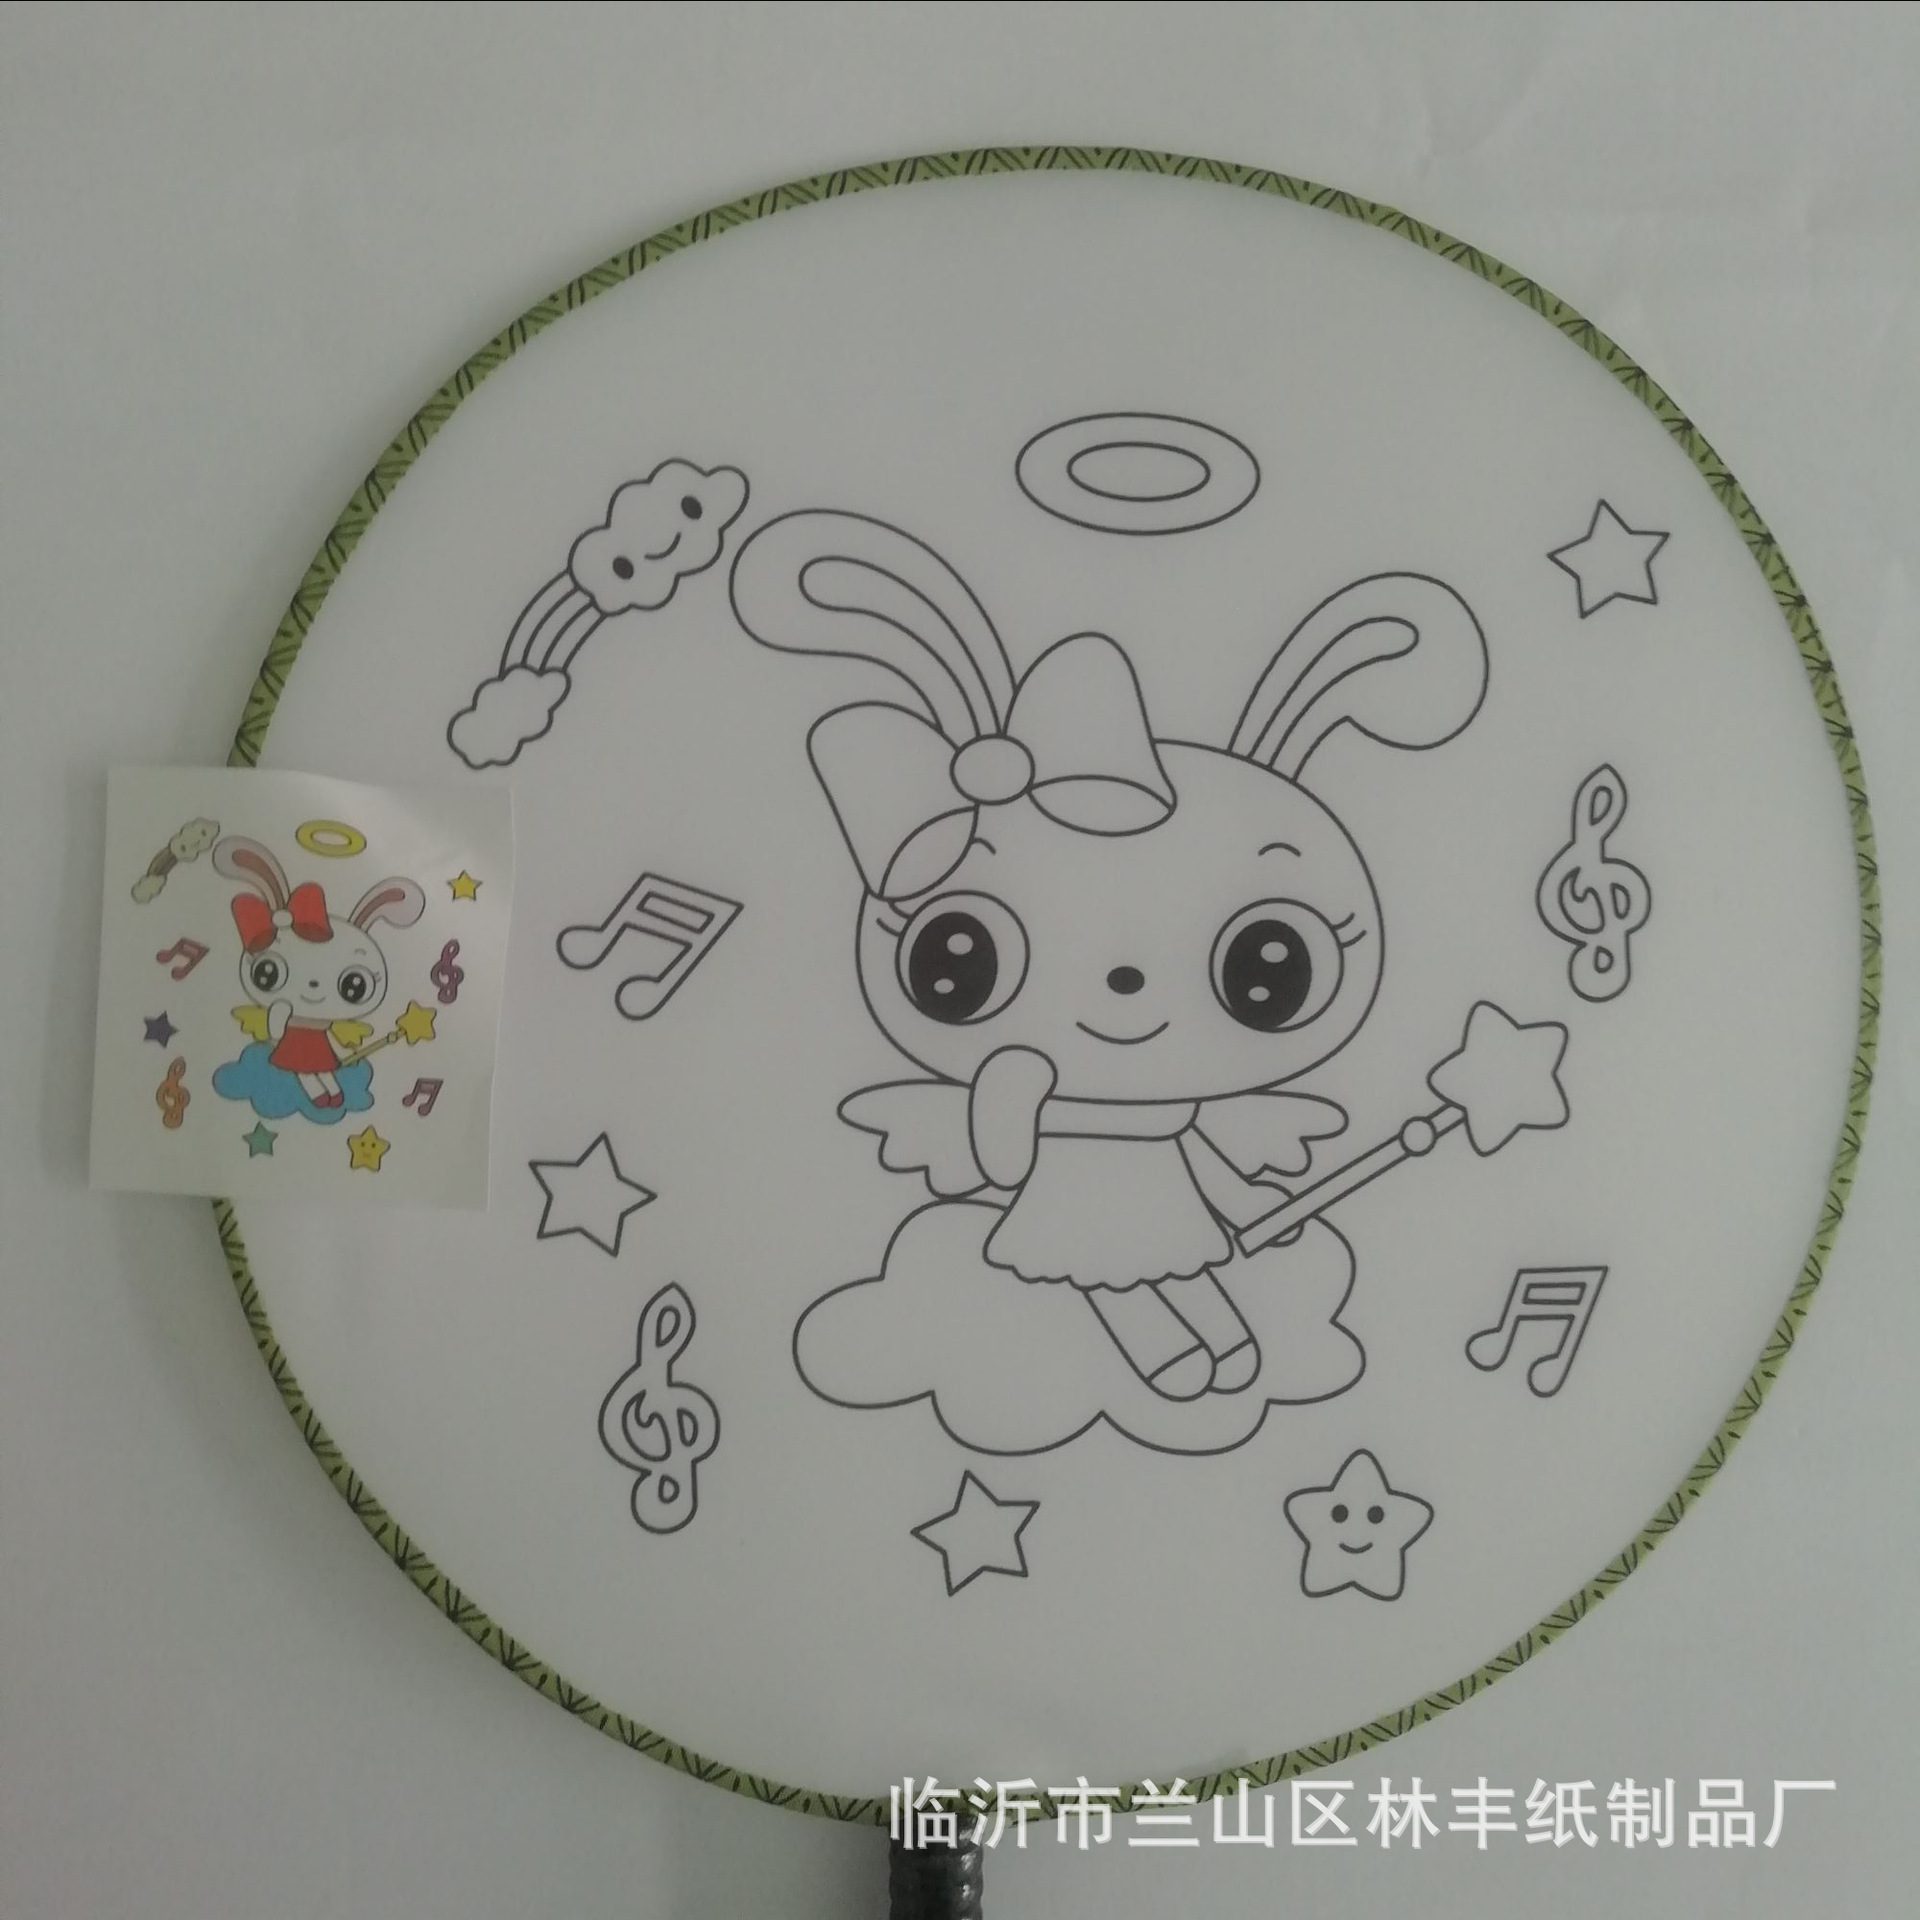 blank Fan children painting Fan diy circular fan Material package Gongshan Fan Videos Hand drawn Creative Art Material Science